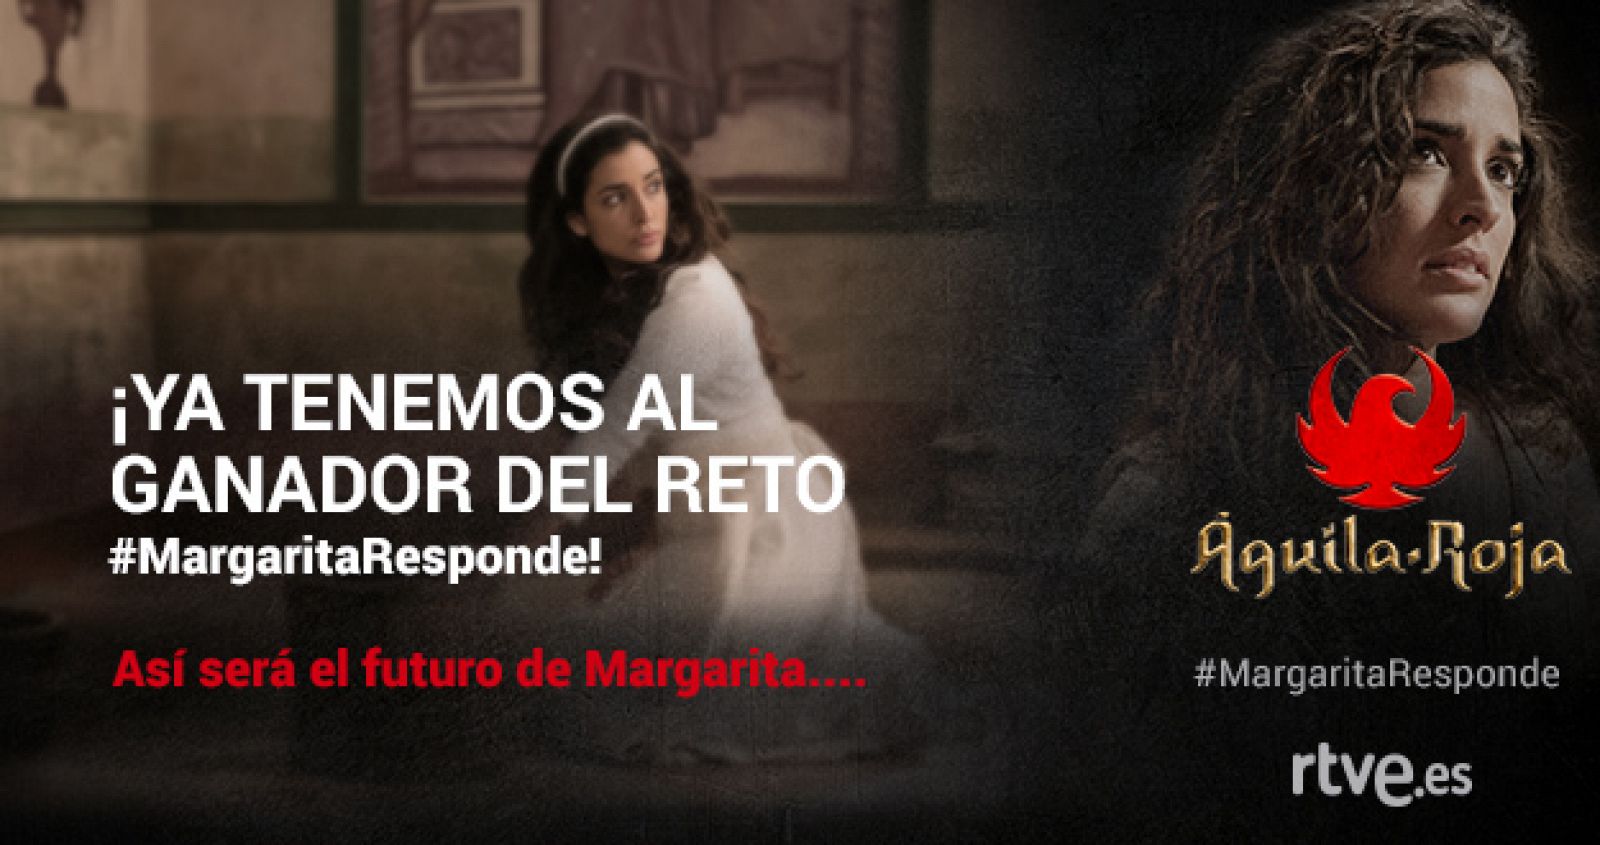 ¡Conoce al ganador del reto #MargaritaResponde! El guión de #AguilaRoja88 es tuyo